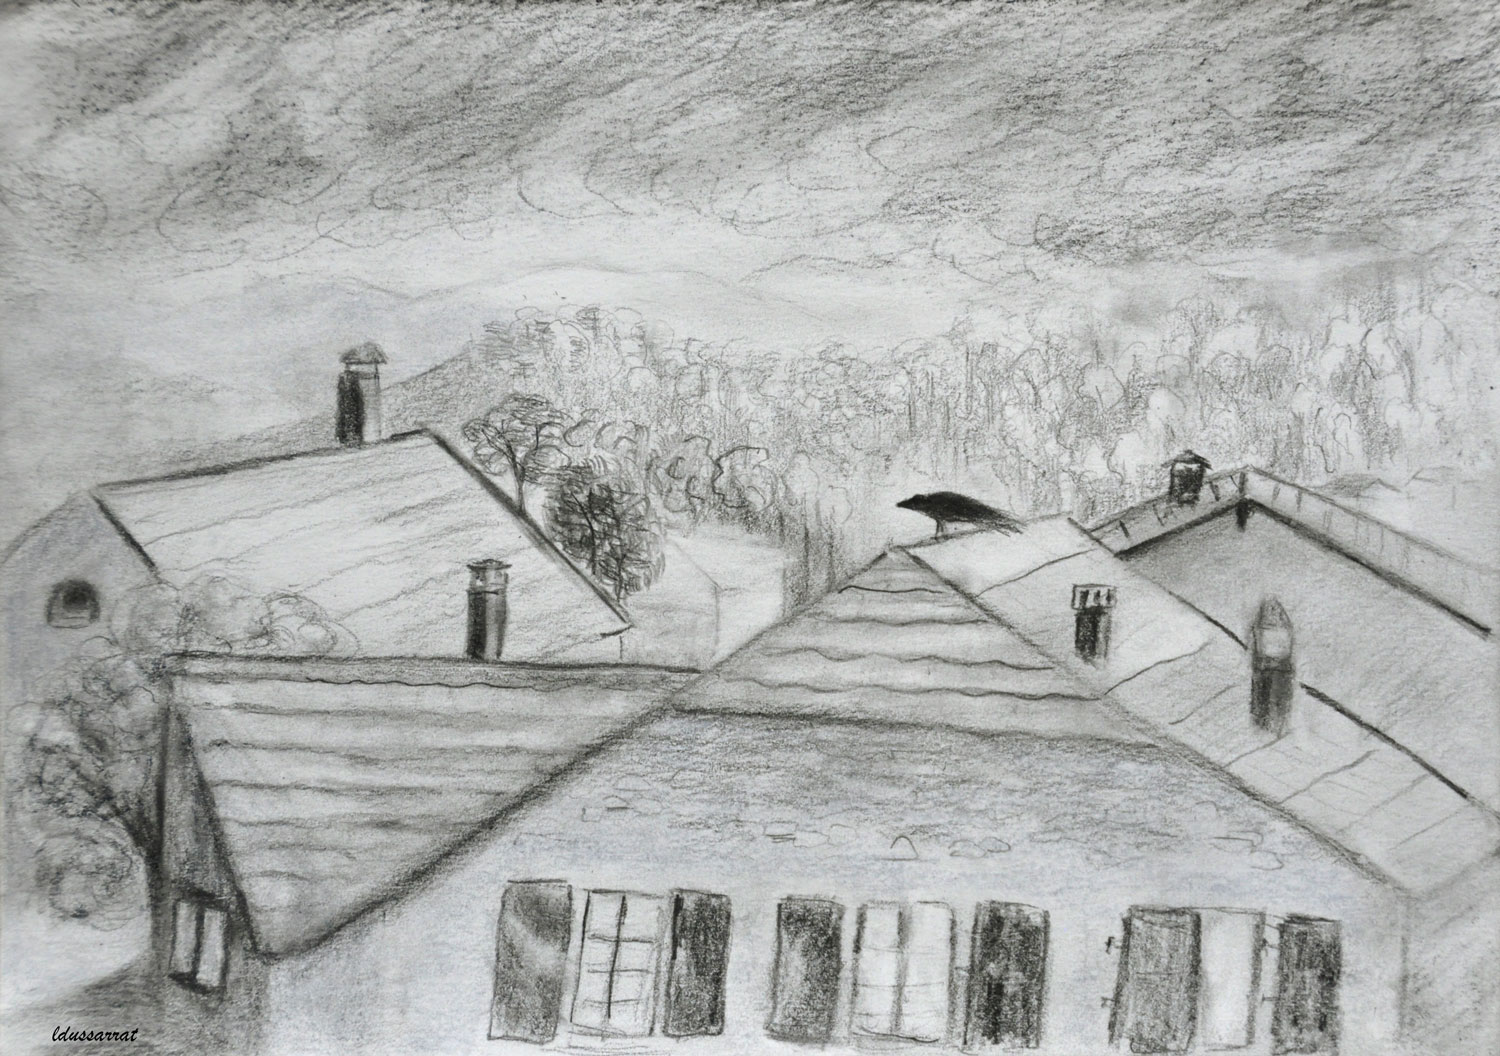 Les toits, Penthalaz, 23. Le corbeau. Crayon sur papier, 21x29, 2021